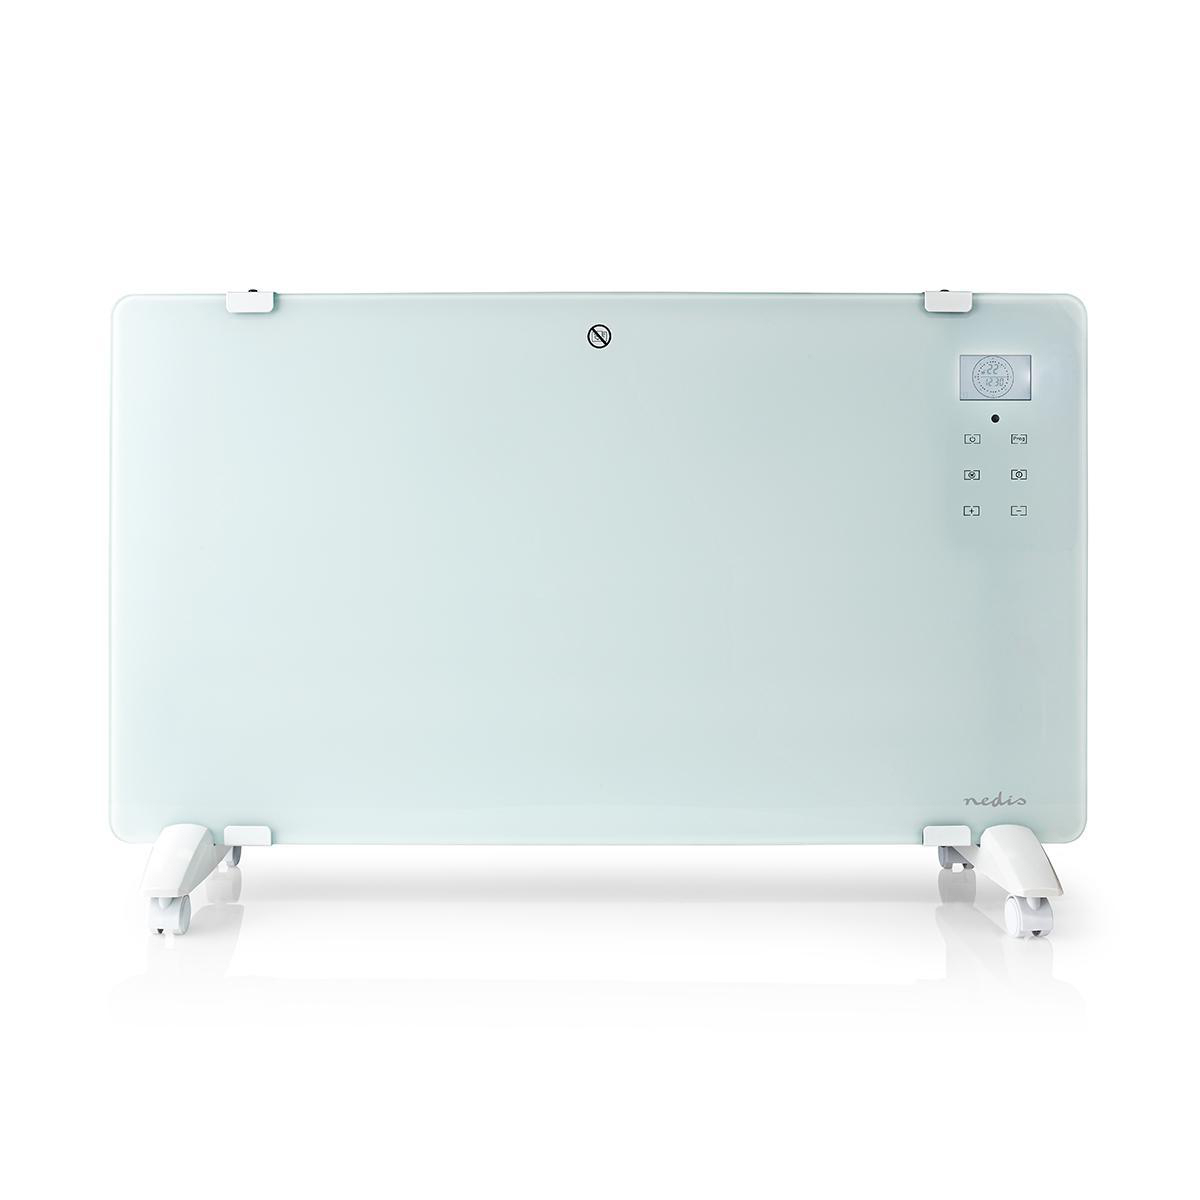 Nedis WLAN-Smart-Konvektionsheizgerät| Thermostat| Glas-Frontplatte| 2000 W|